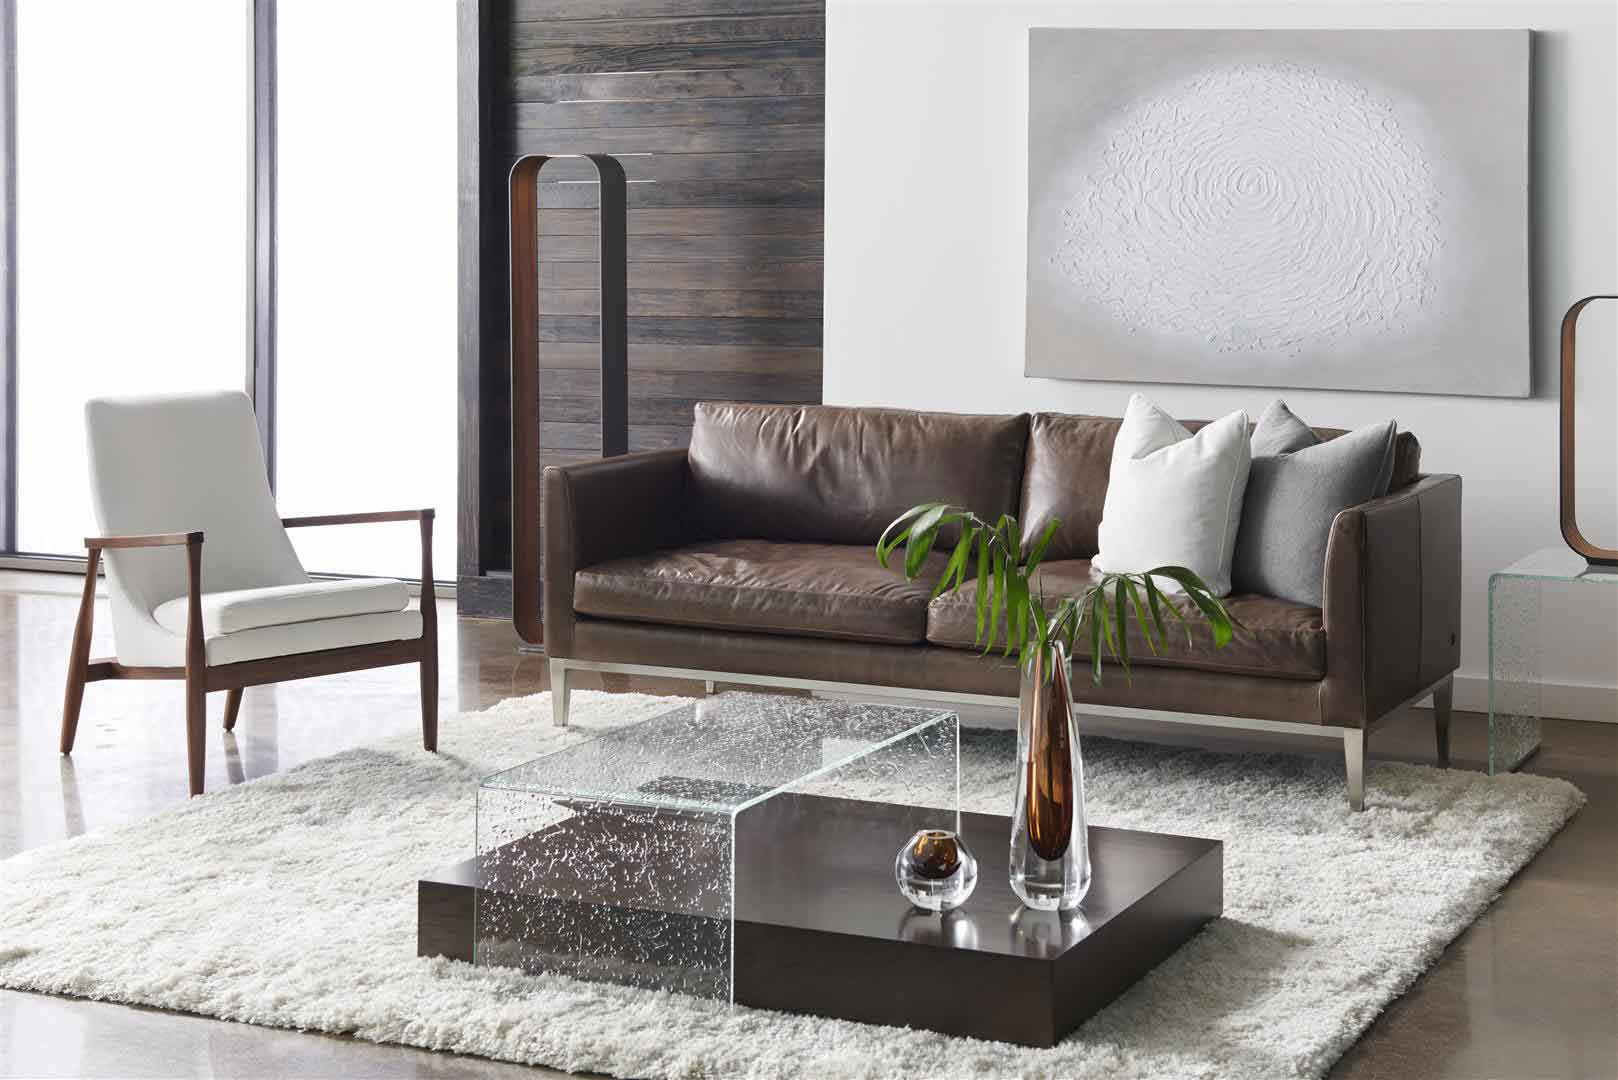 Medicin Hassy Vejhus Furniture "Comfort Wrinkles" - BY DESIGN furniture + interior design